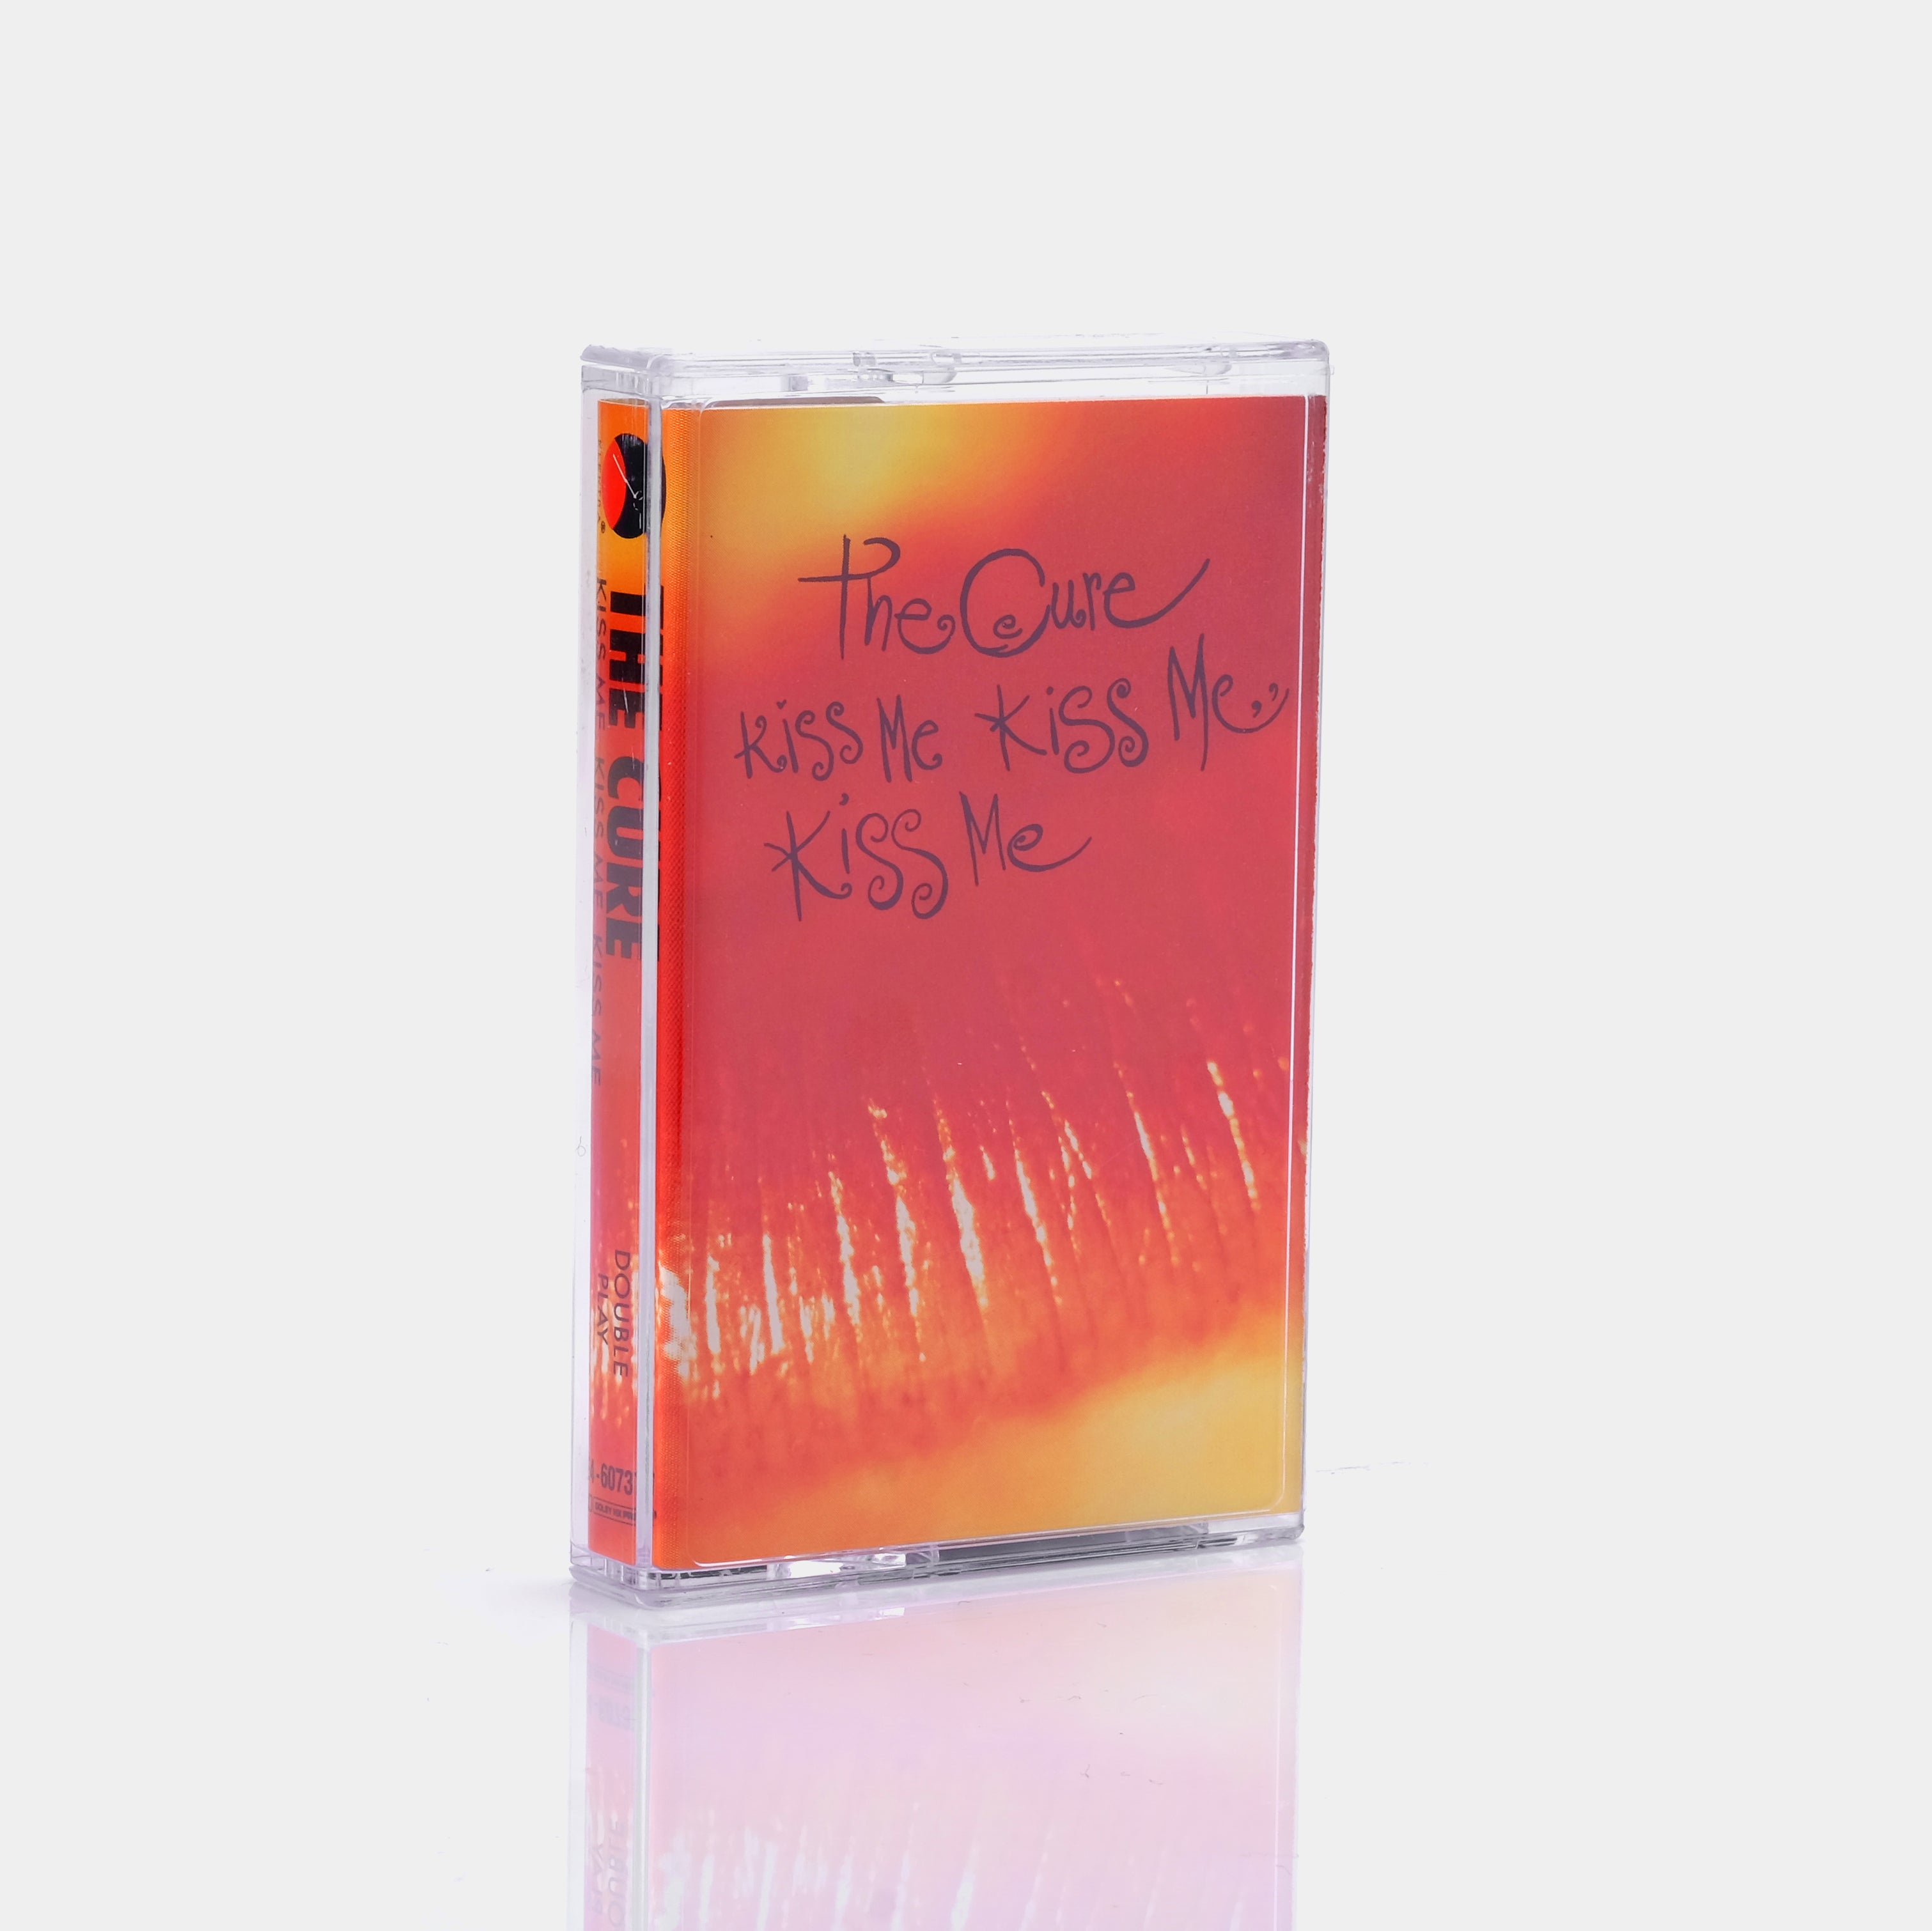 The Cure - Kiss Me Kiss Me Kiss Me Cassette Tape